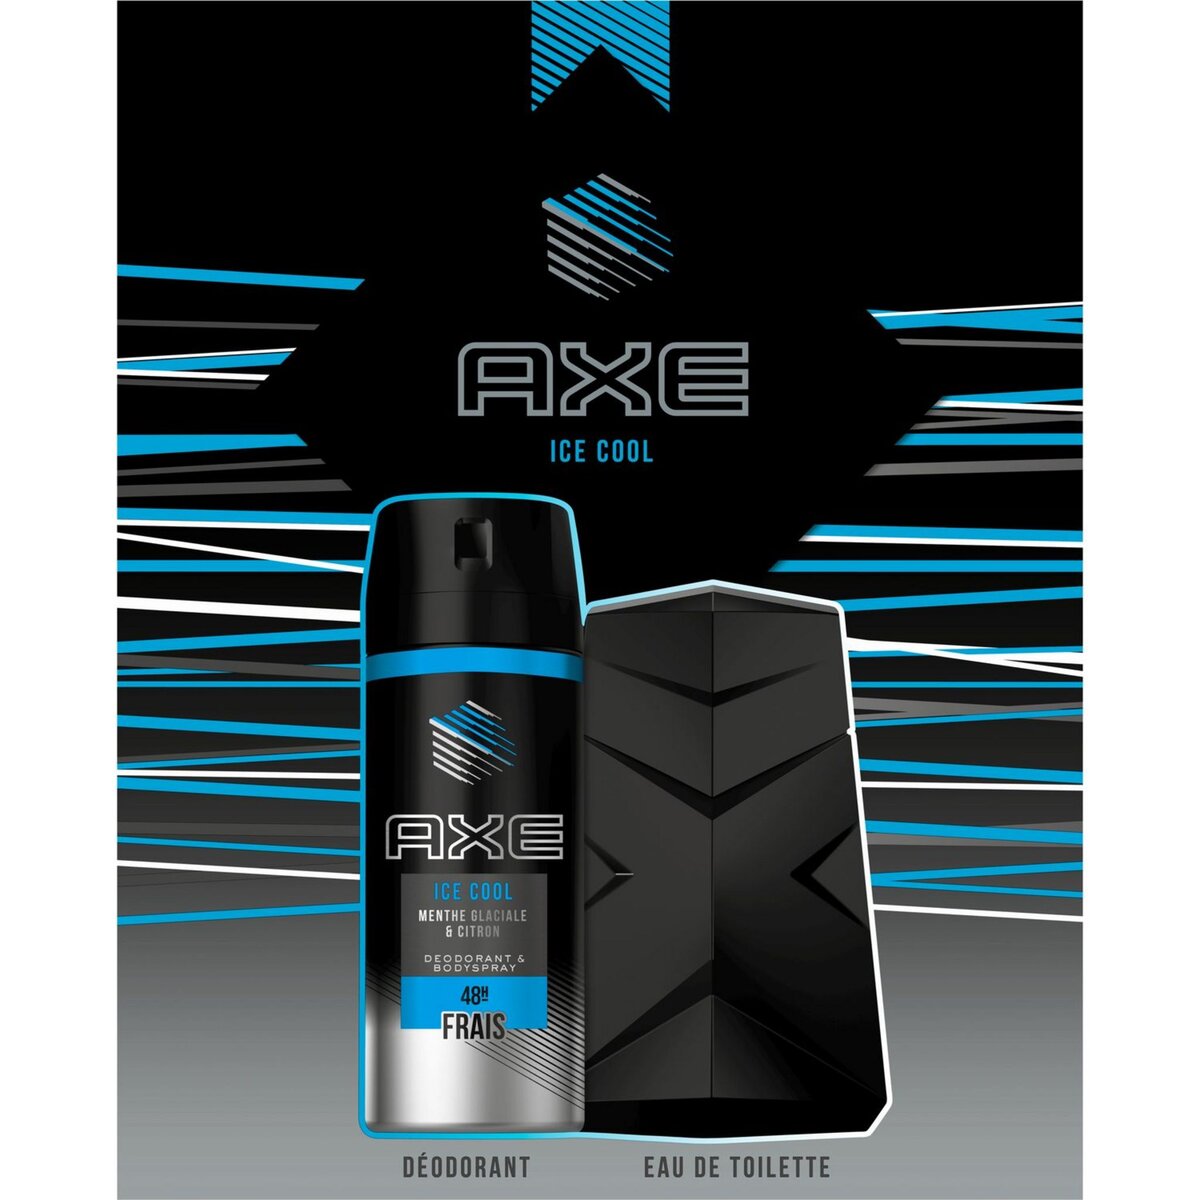 AXE Coffret homme déodorant & eau de toilette ice cool 2 produits